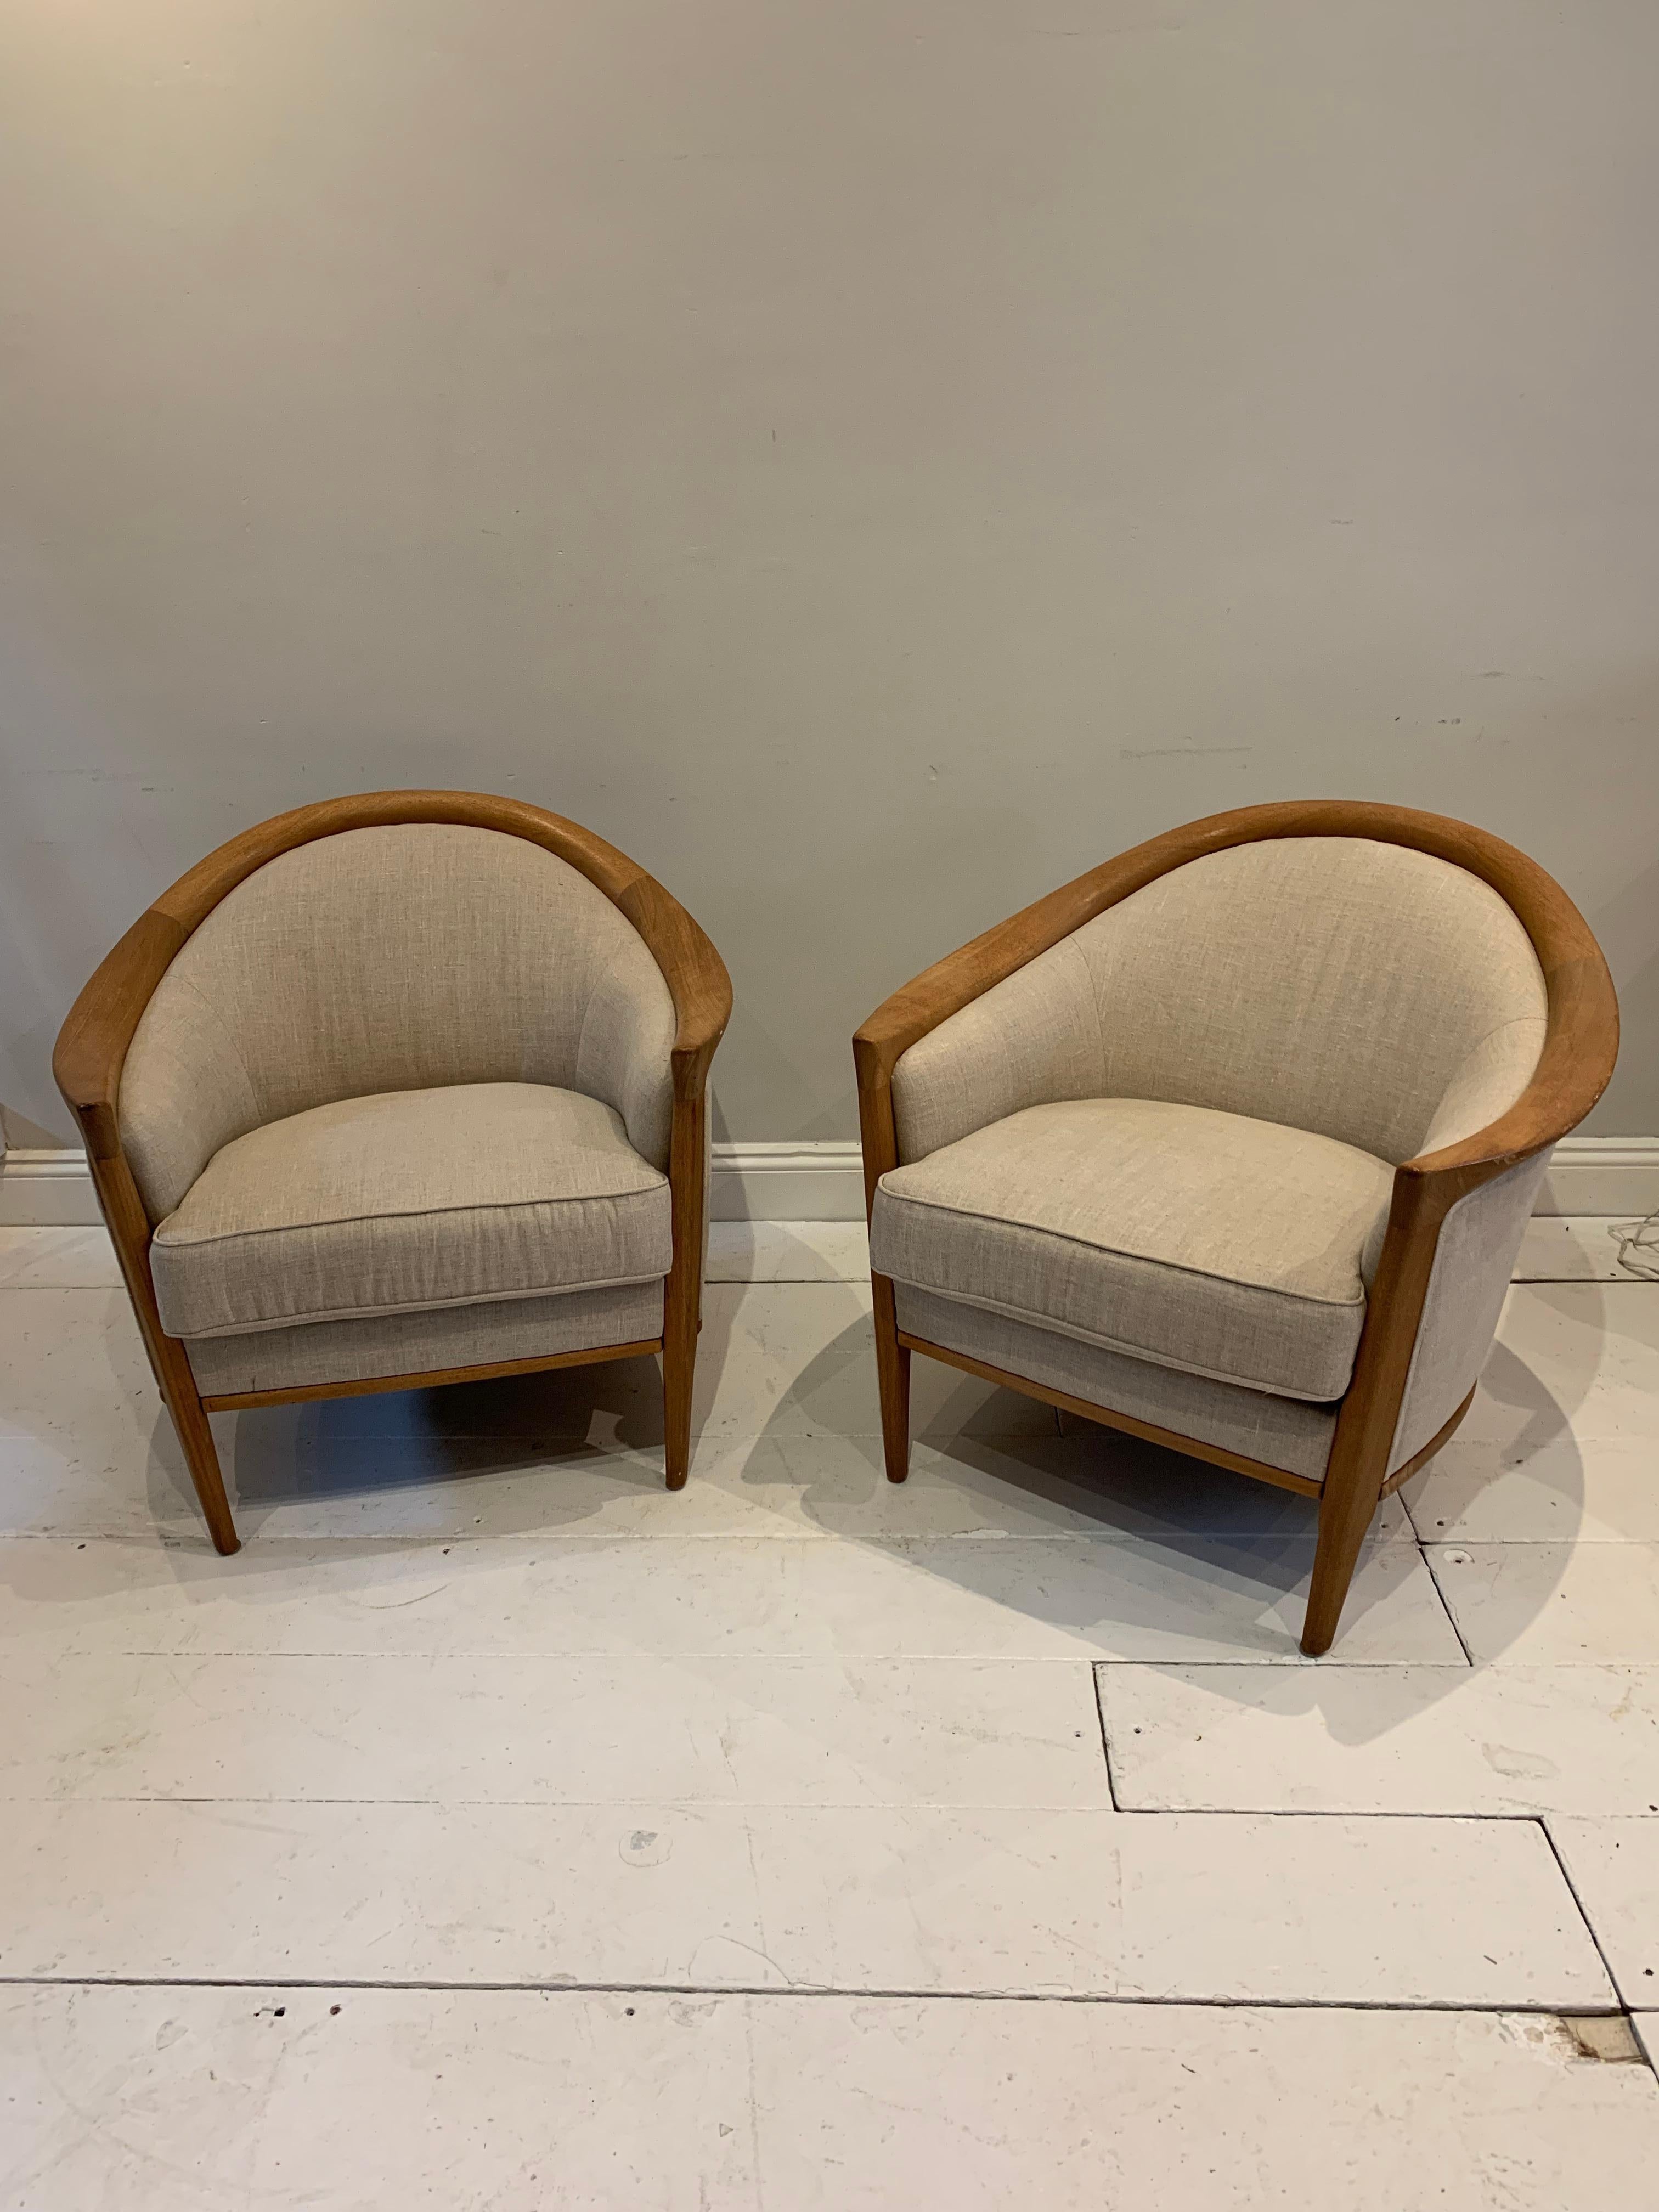 Une paire de fauteuils en chêne suédois très confortables et élégants.  Il y a une très petite différence de taille qui est à peine perceptible.
Les dossiers sont profonds et incurvés, avec des coussins épais.  Le bois est de couleur miel foncé. 